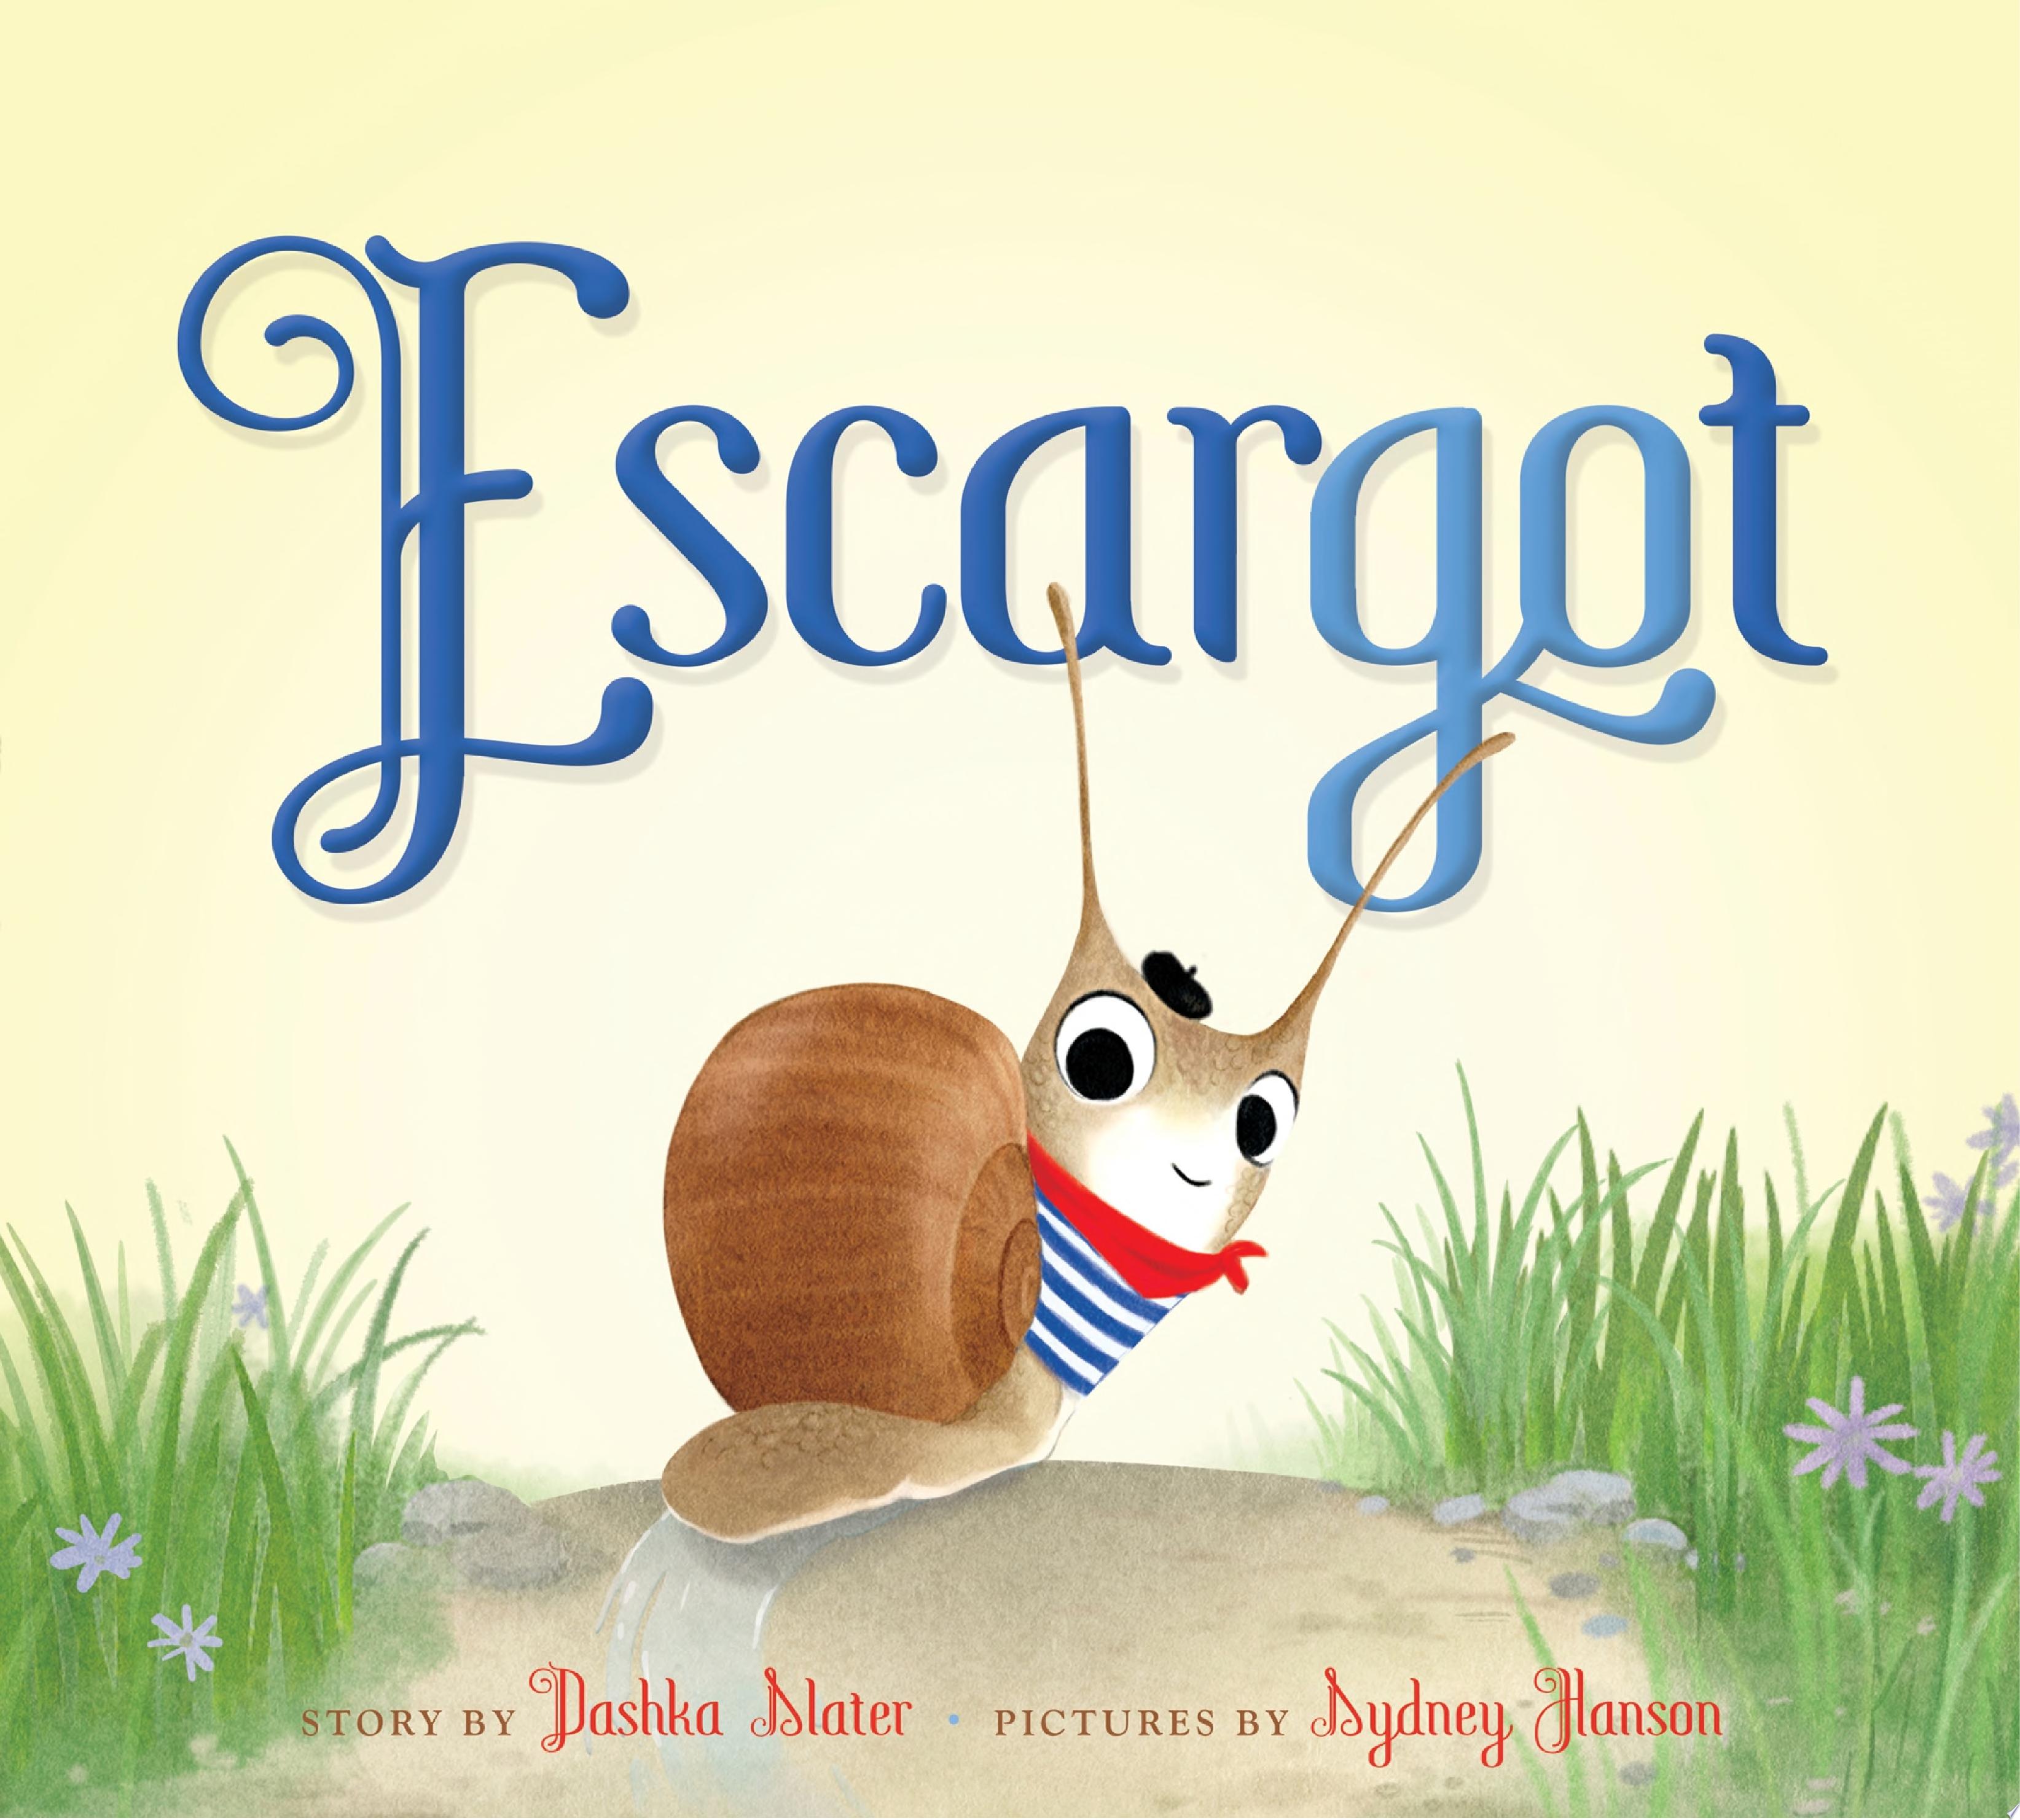 Image for "Escargot"